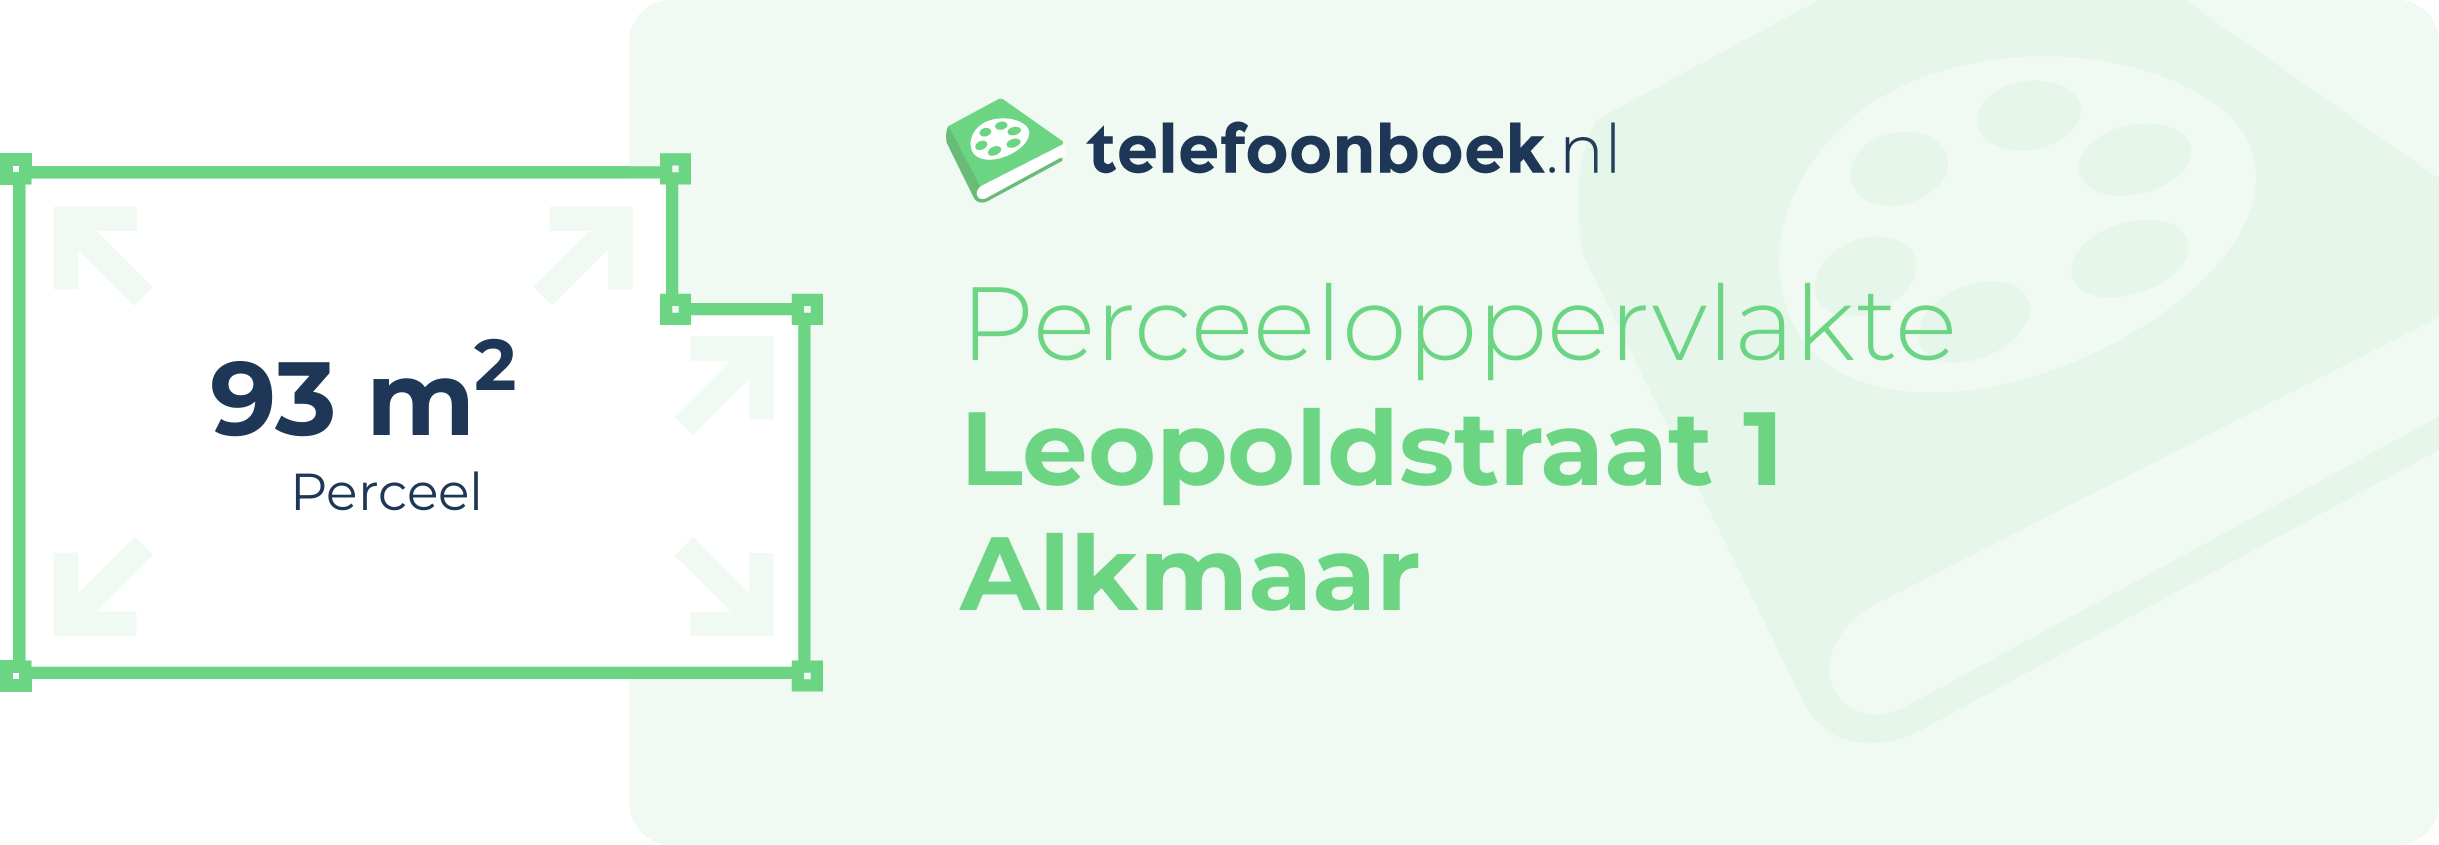 Perceeloppervlakte Leopoldstraat 1 Alkmaar